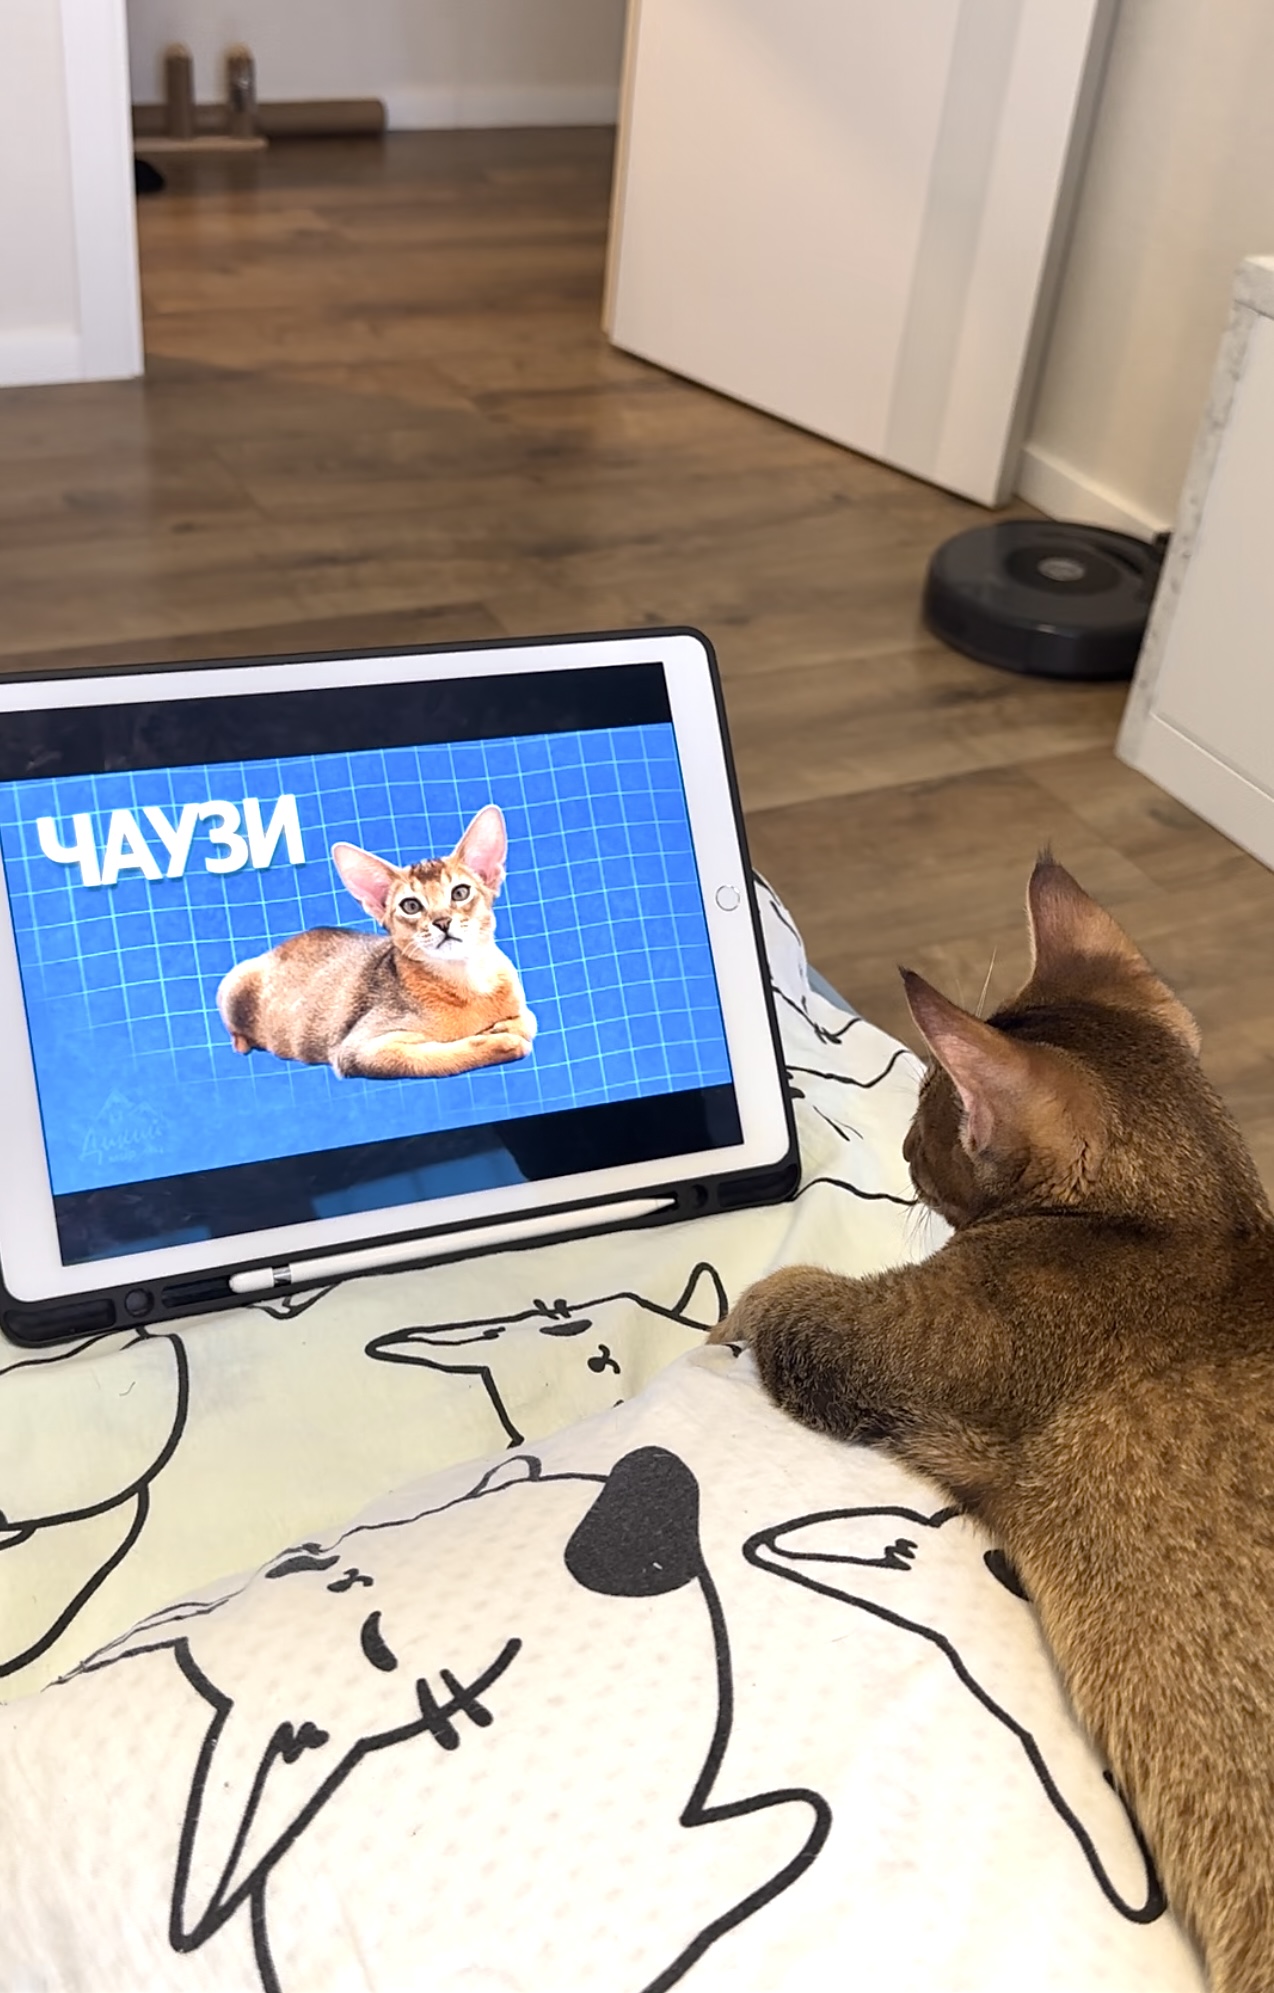 Чем занять кота? 🙂 котёнок чаузи смотрит фильмы про кошек на ipad